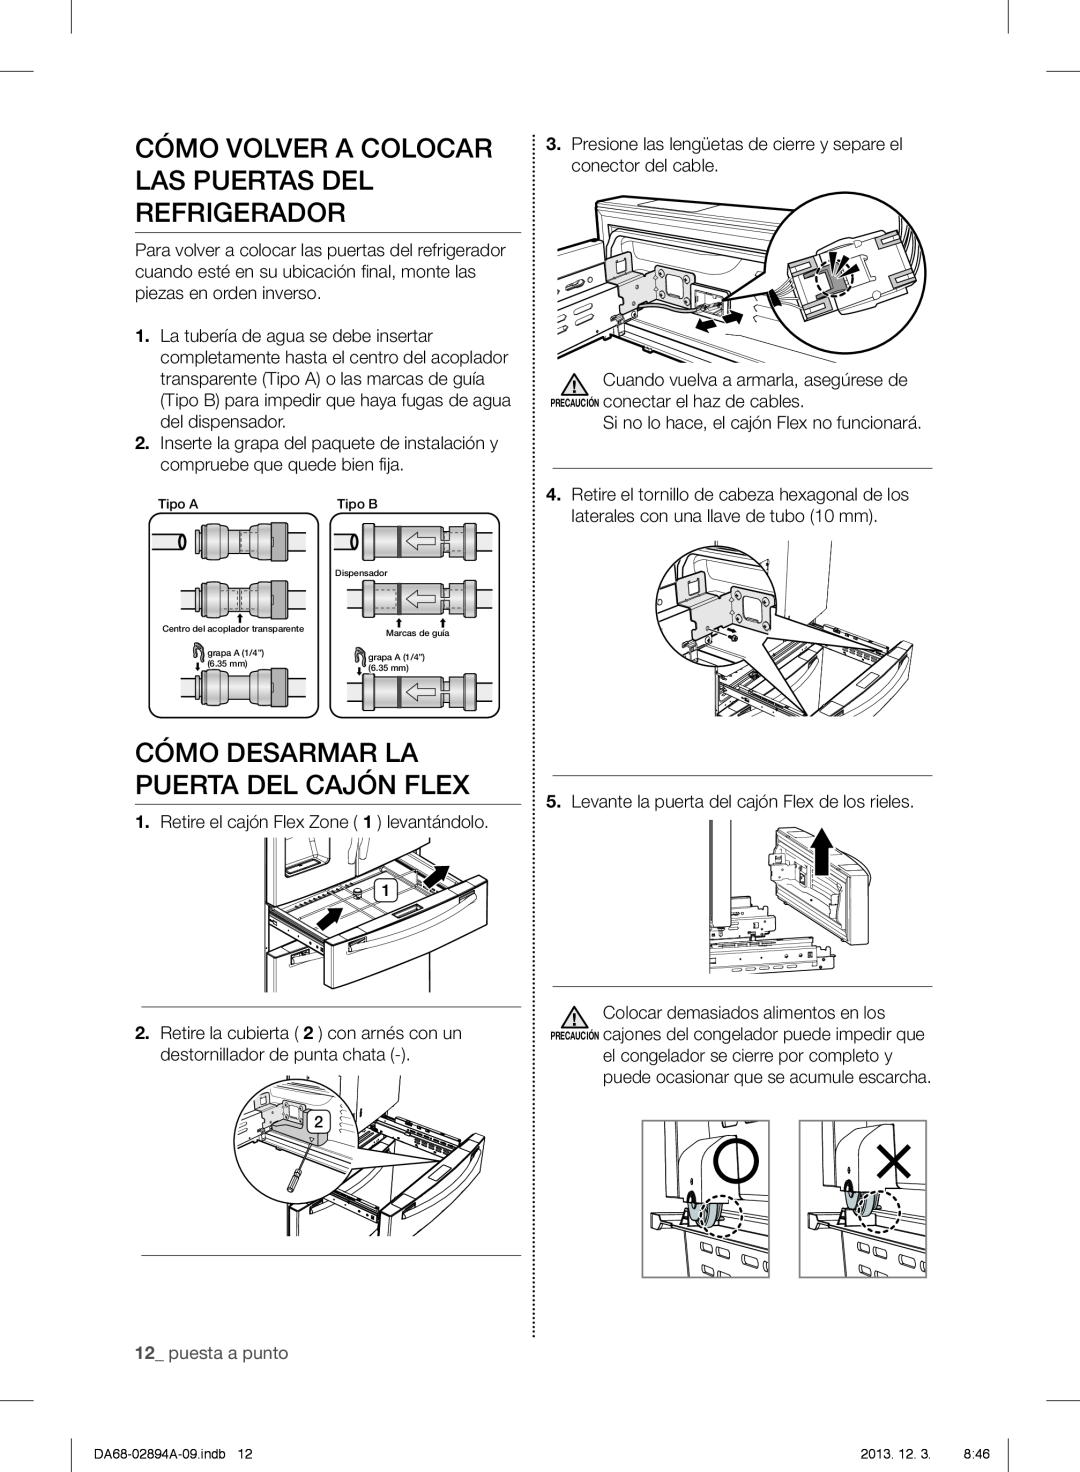 Samsung RF31FMESBSR user manual Cómo Volver A Colocar Las Puertas Del Refrigerador, Cómo Desarmar La Puerta Del Cajón Flex 